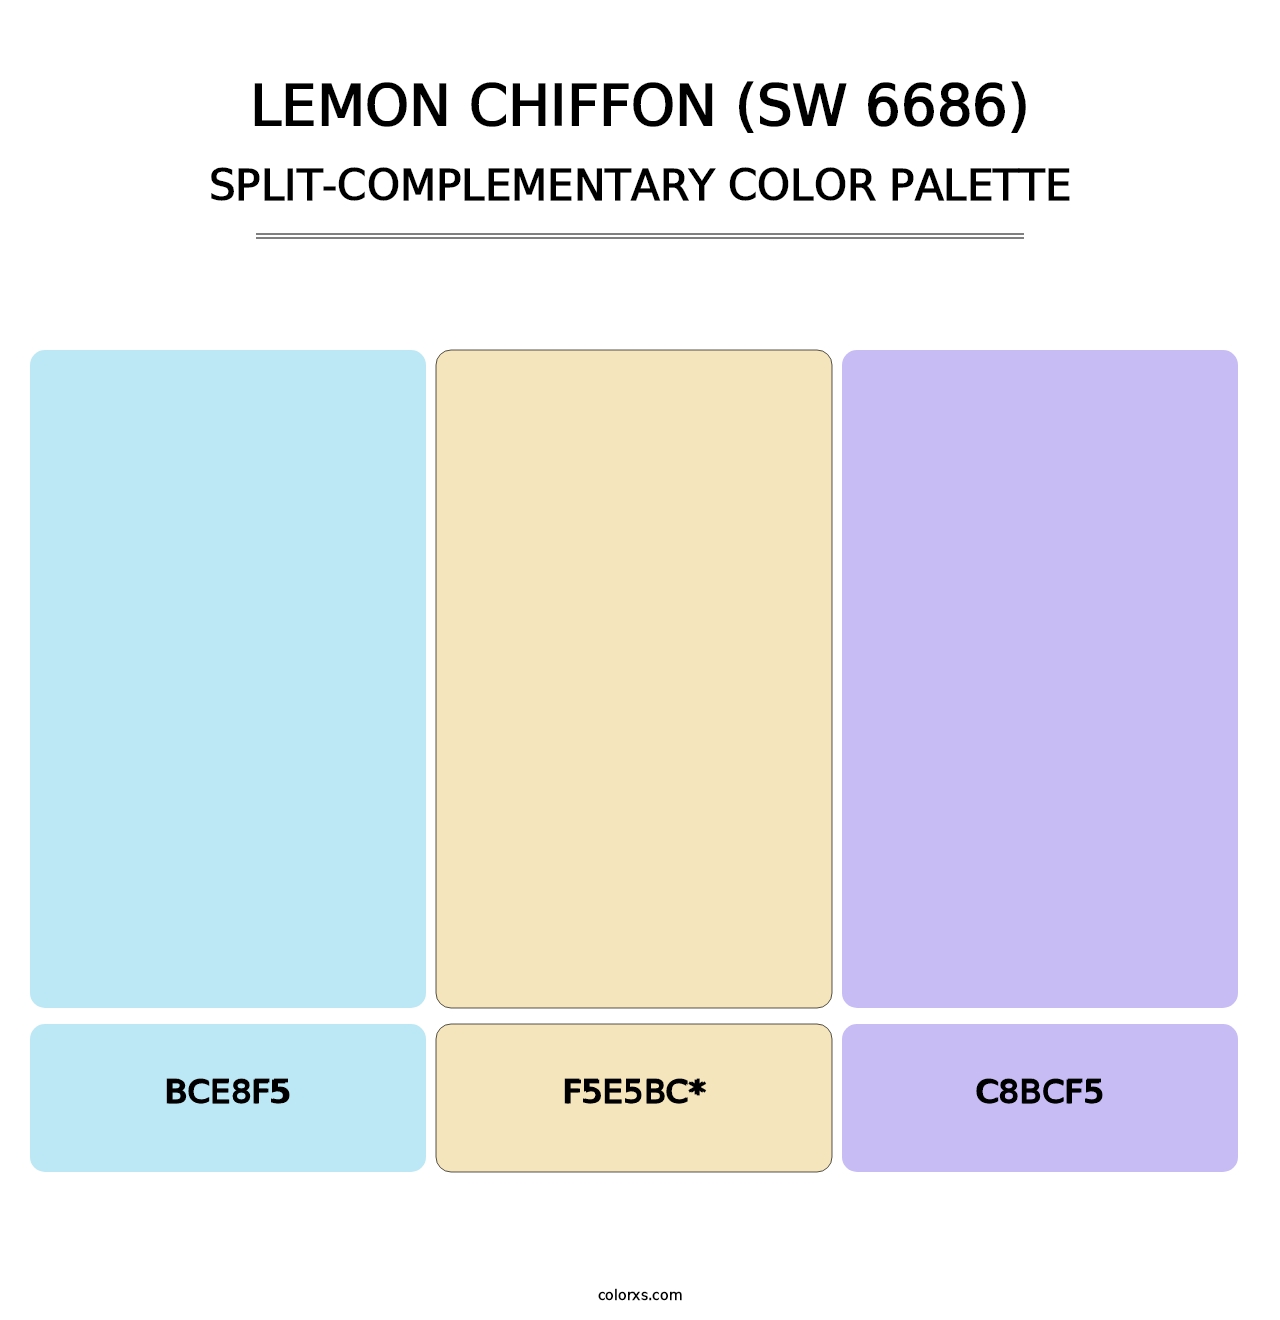 Lemon Chiffon (SW 6686) - Split-Complementary Color Palette